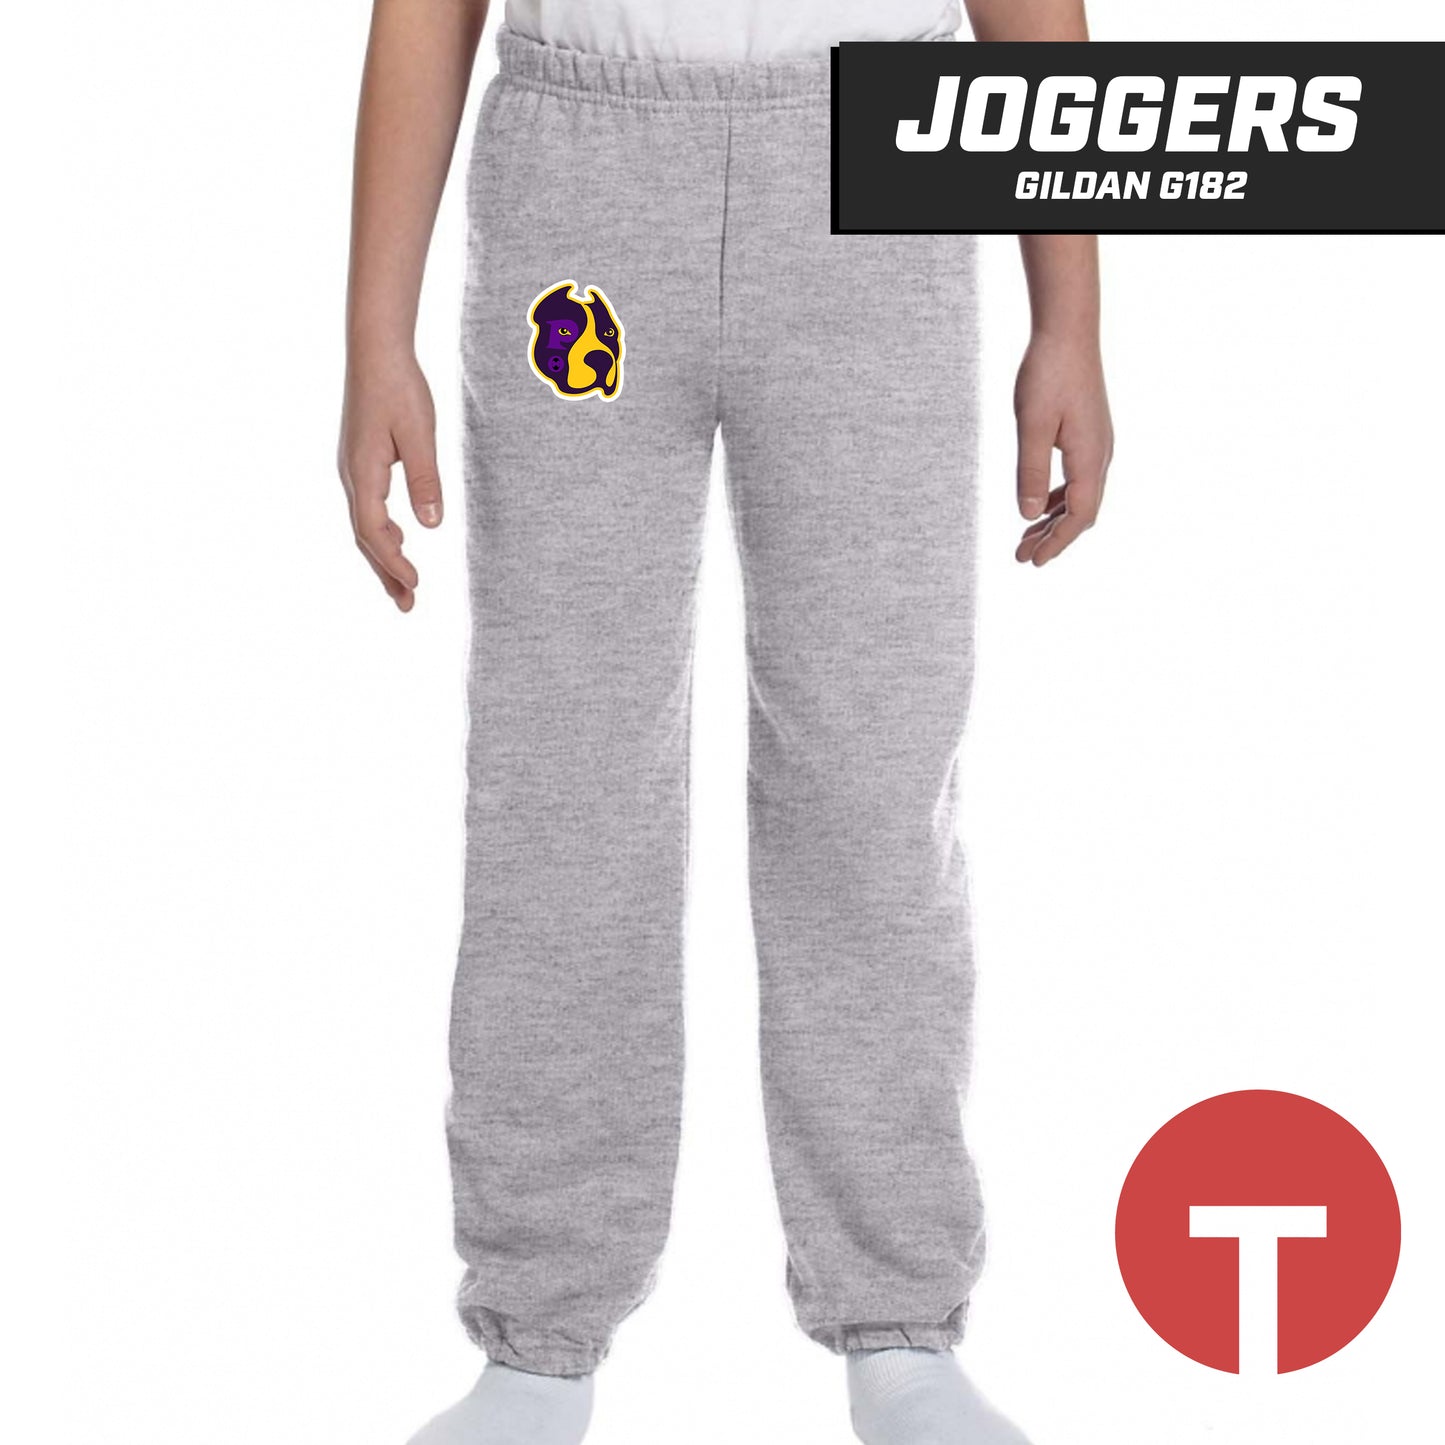 Hounds - Jogger pants Gildan G182